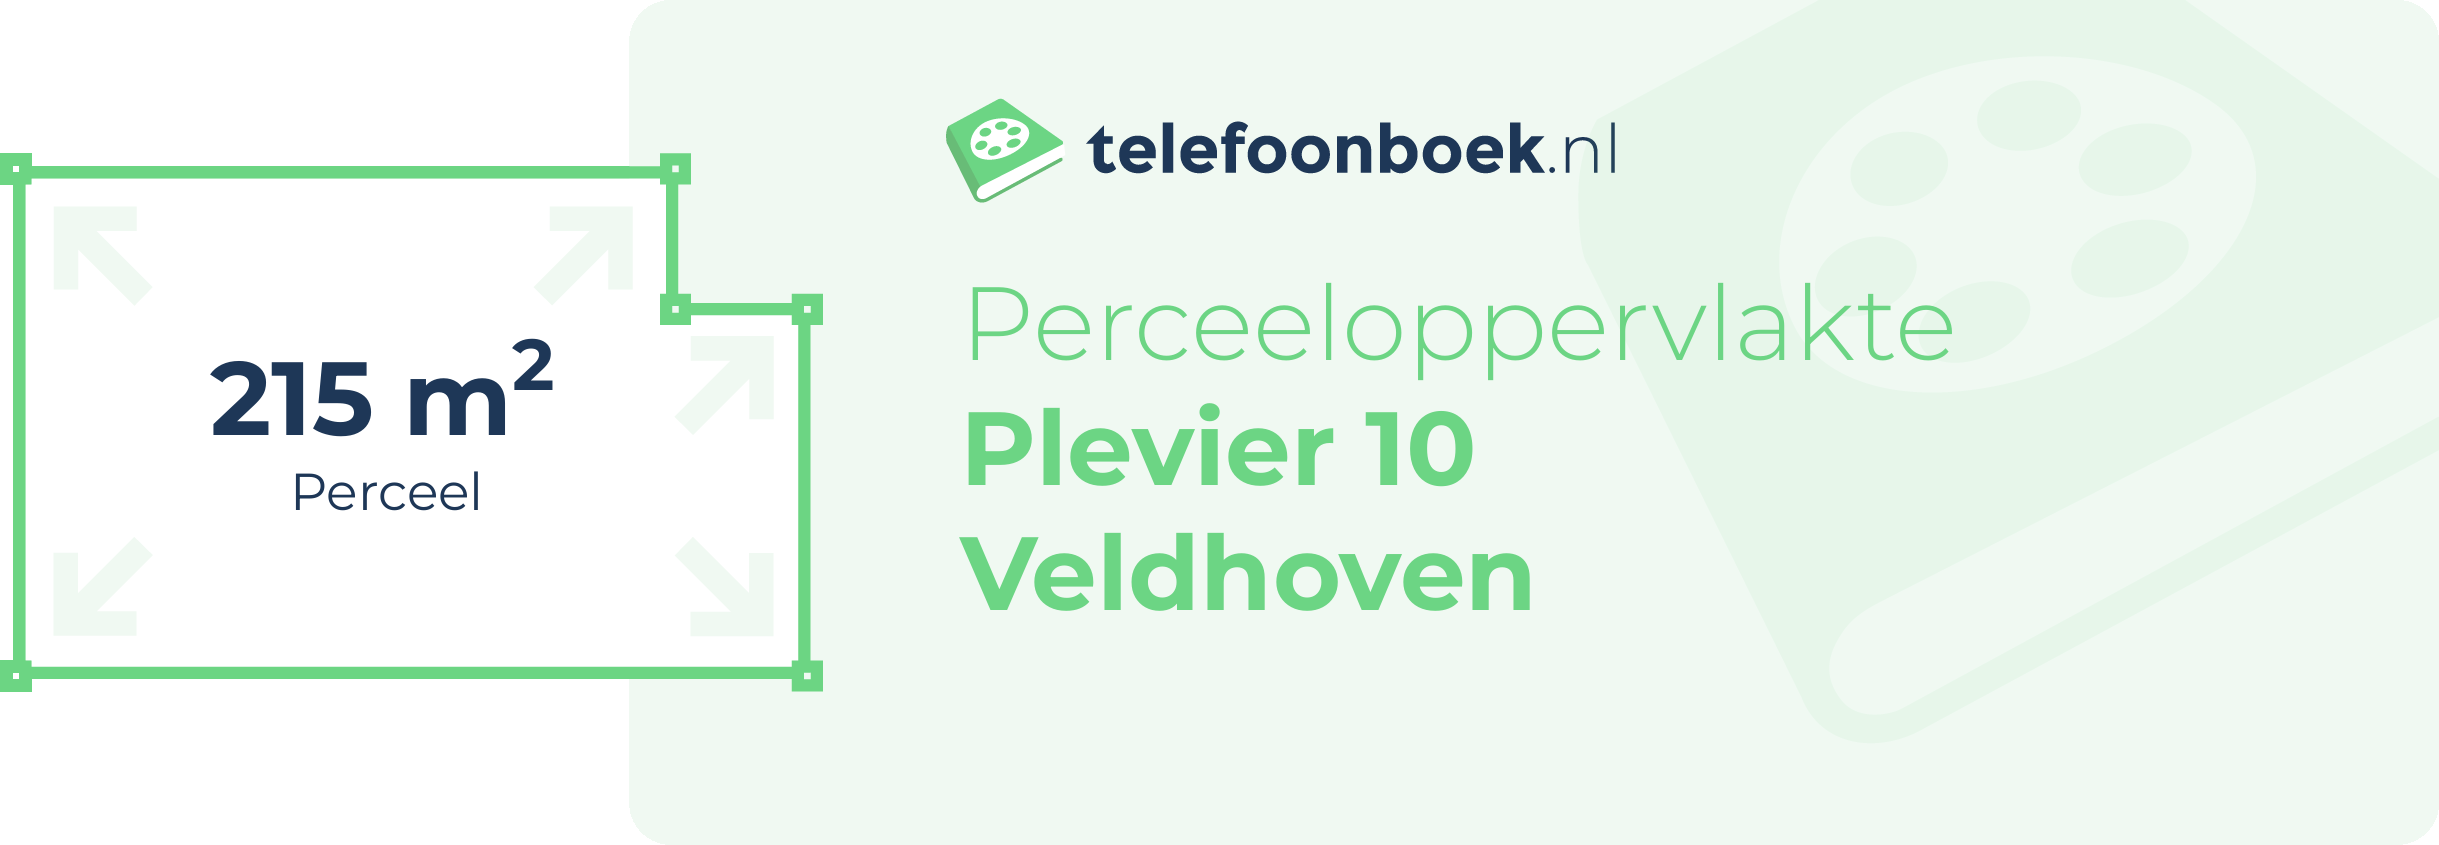 Perceeloppervlakte Plevier 10 Veldhoven